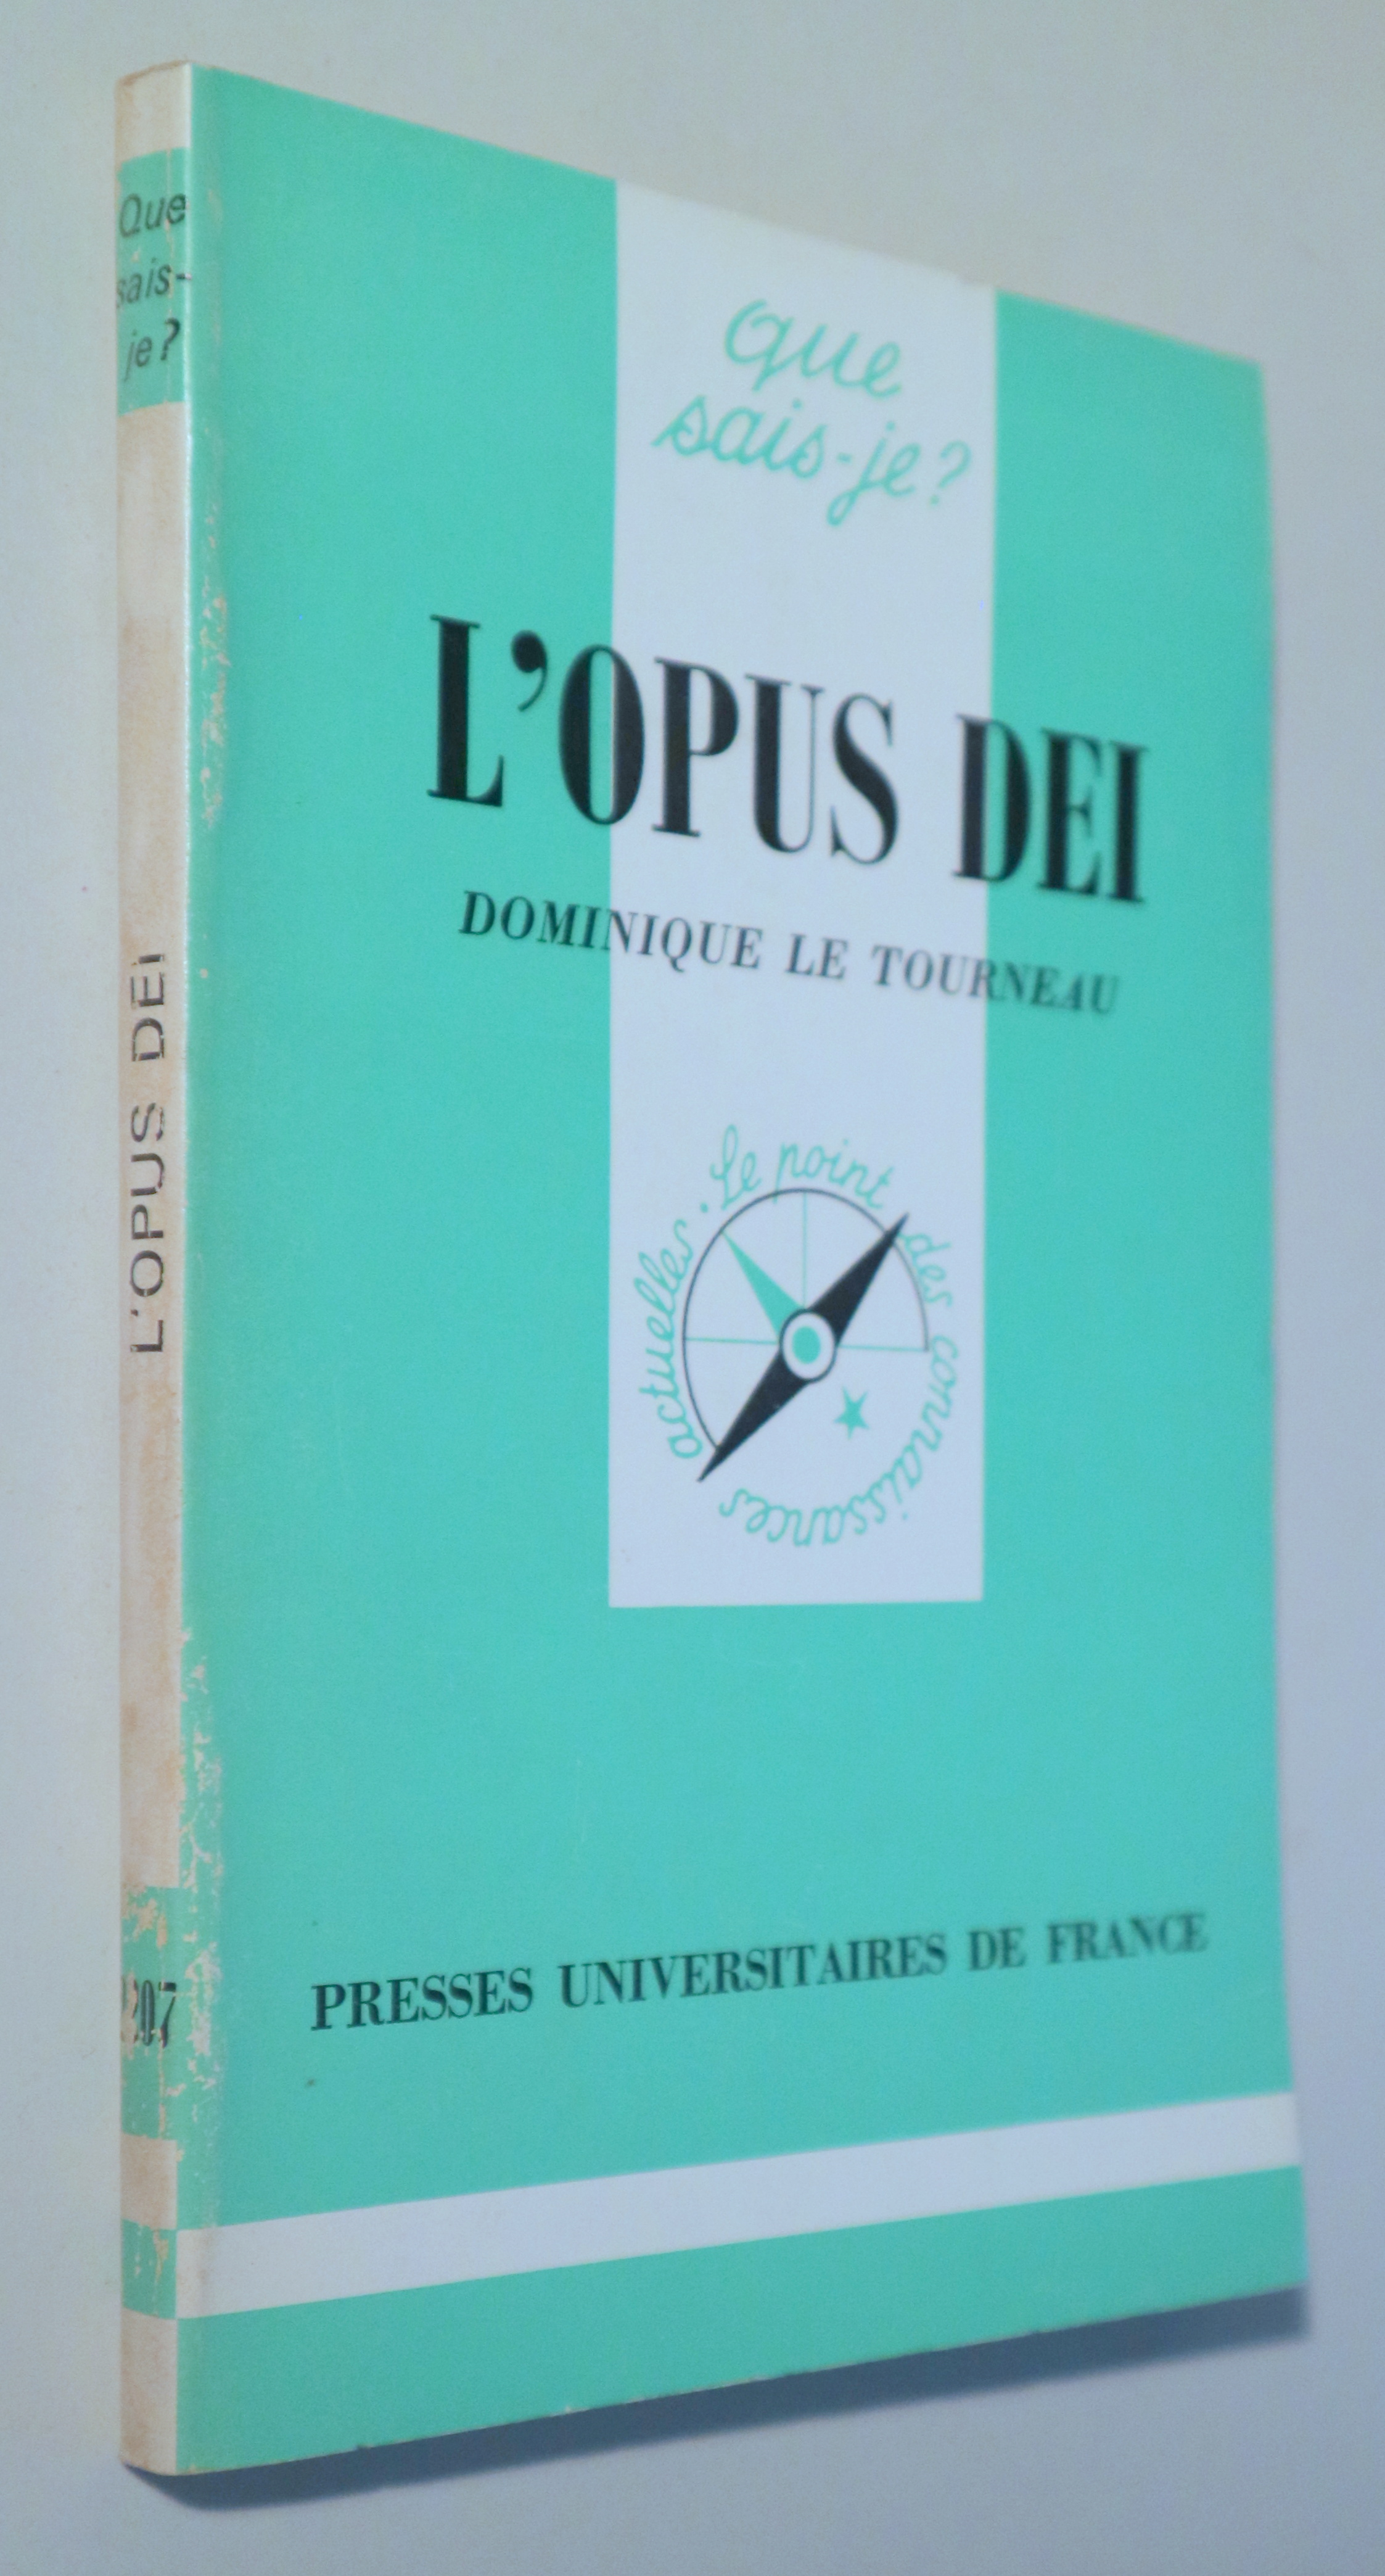 L'OPUS DEI - Paris 1985